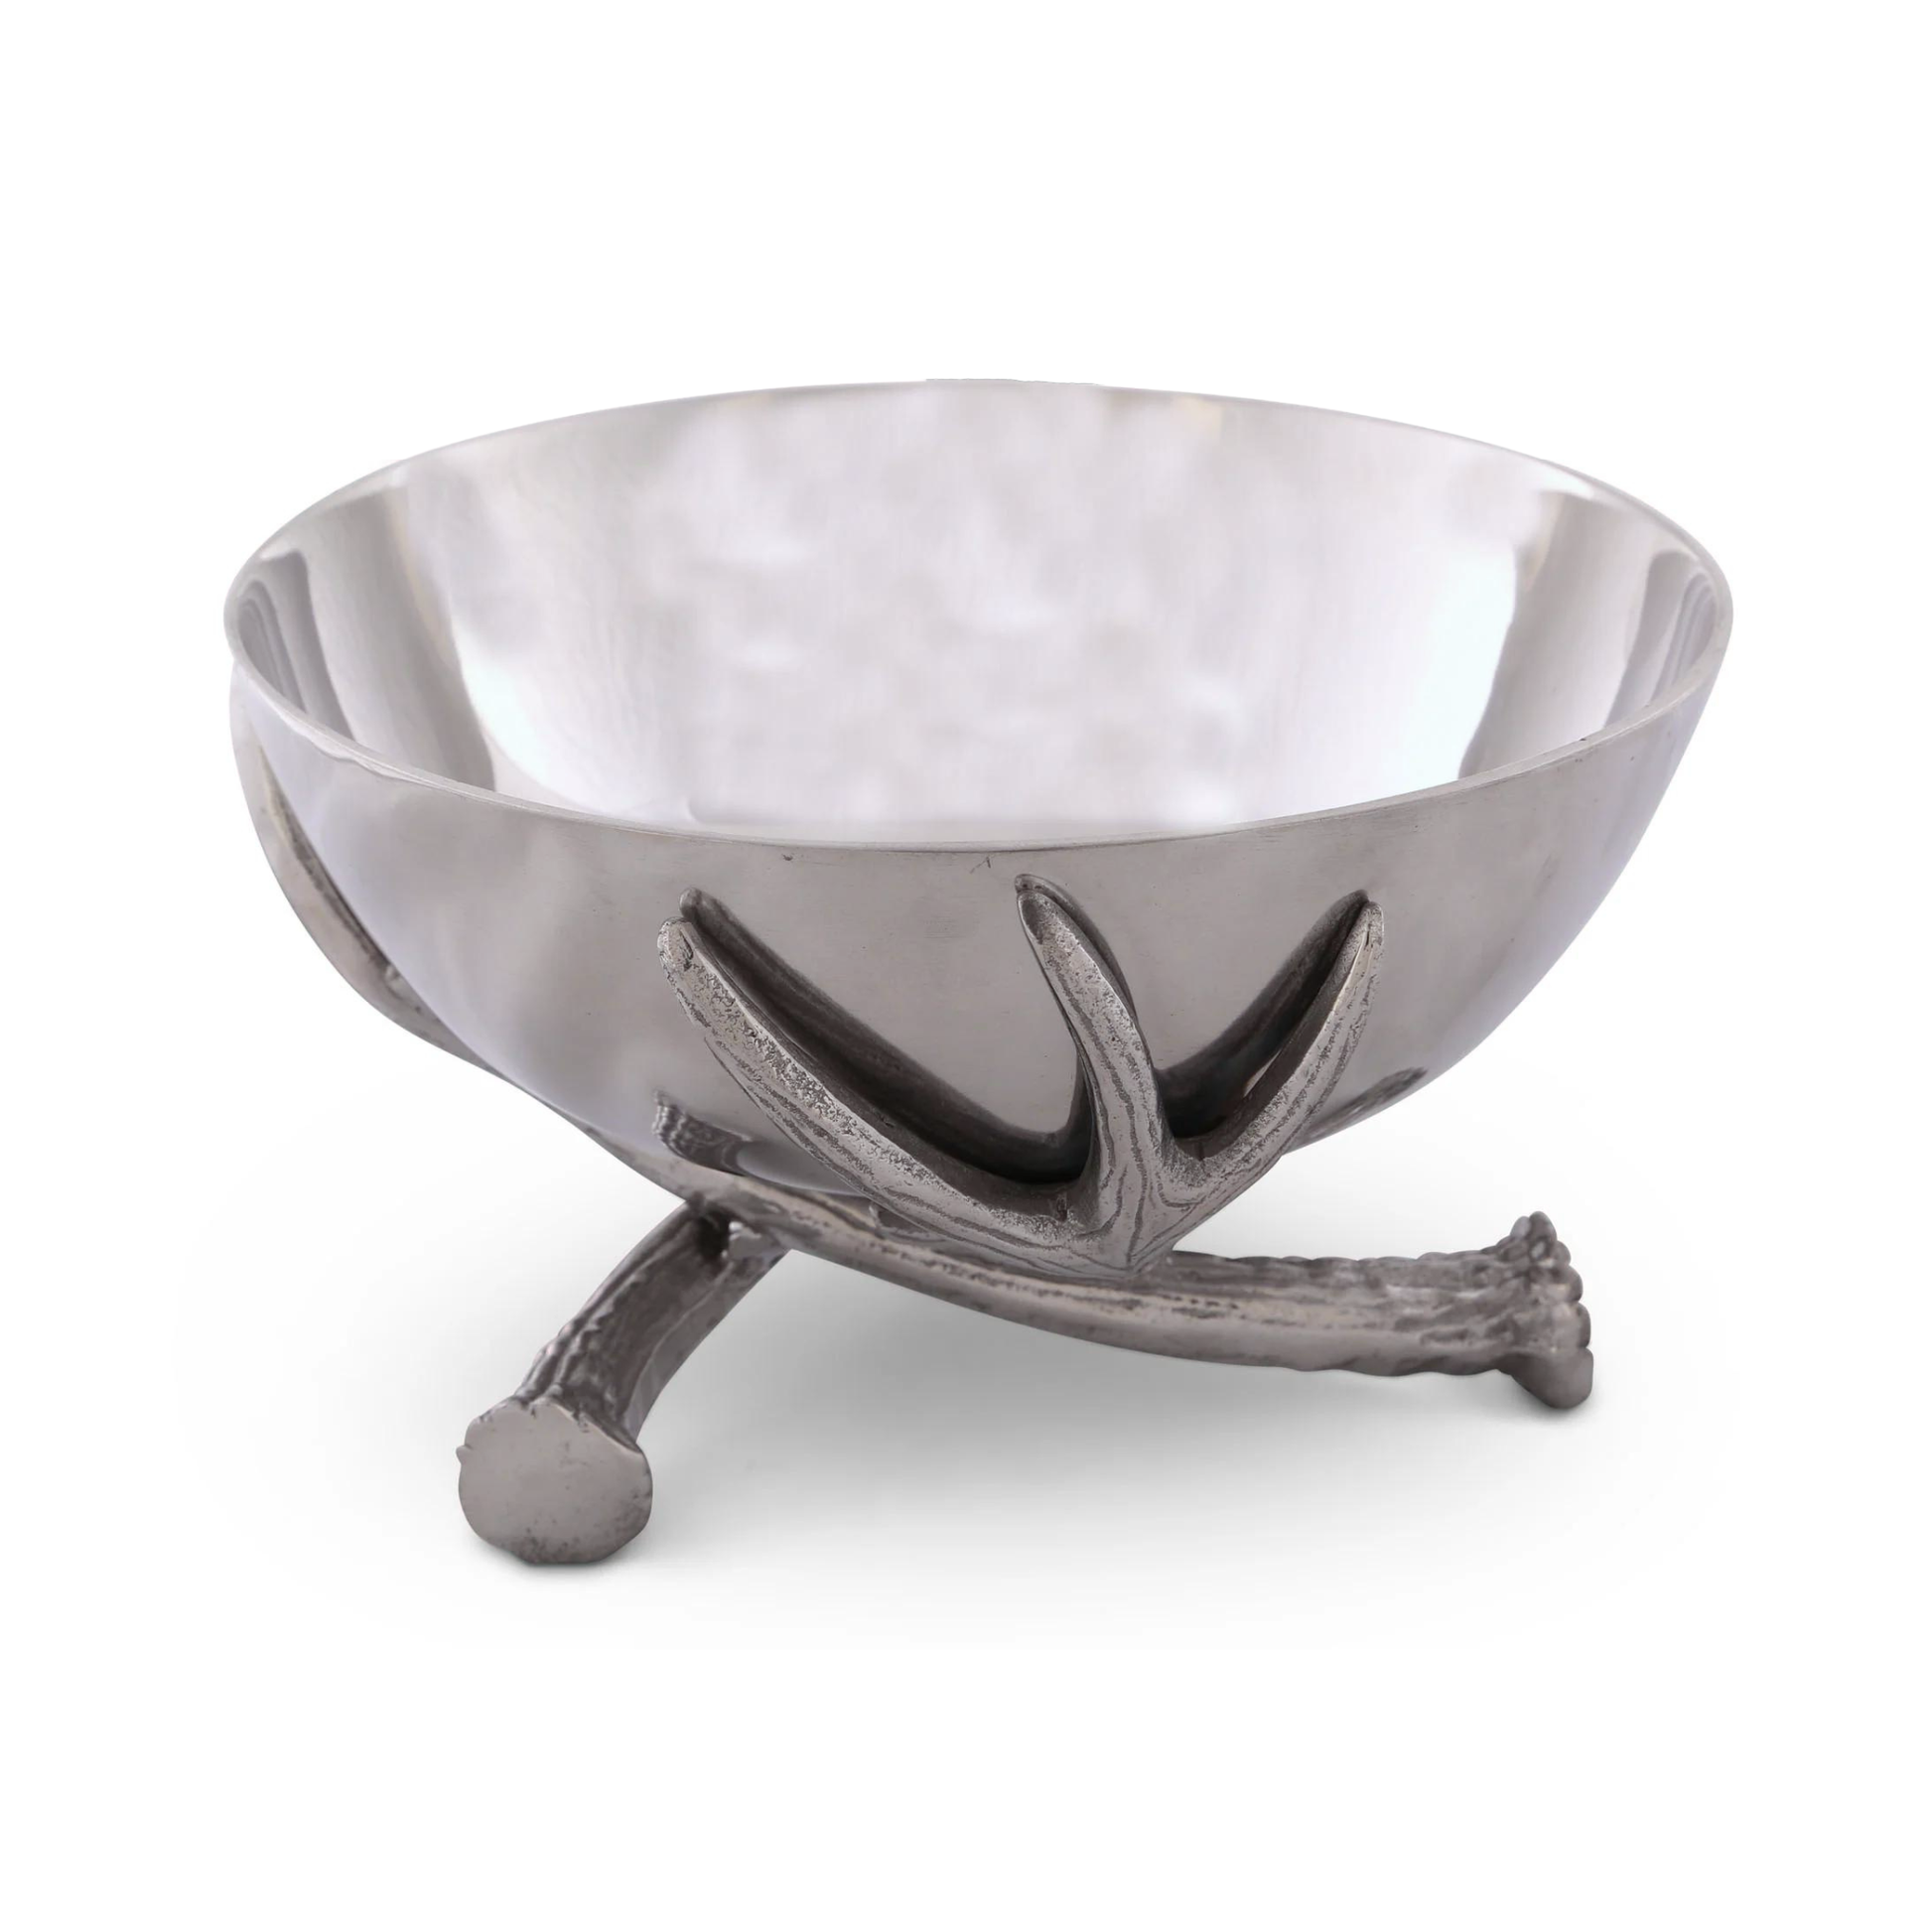 Metal pewter bowl with metal antler stand